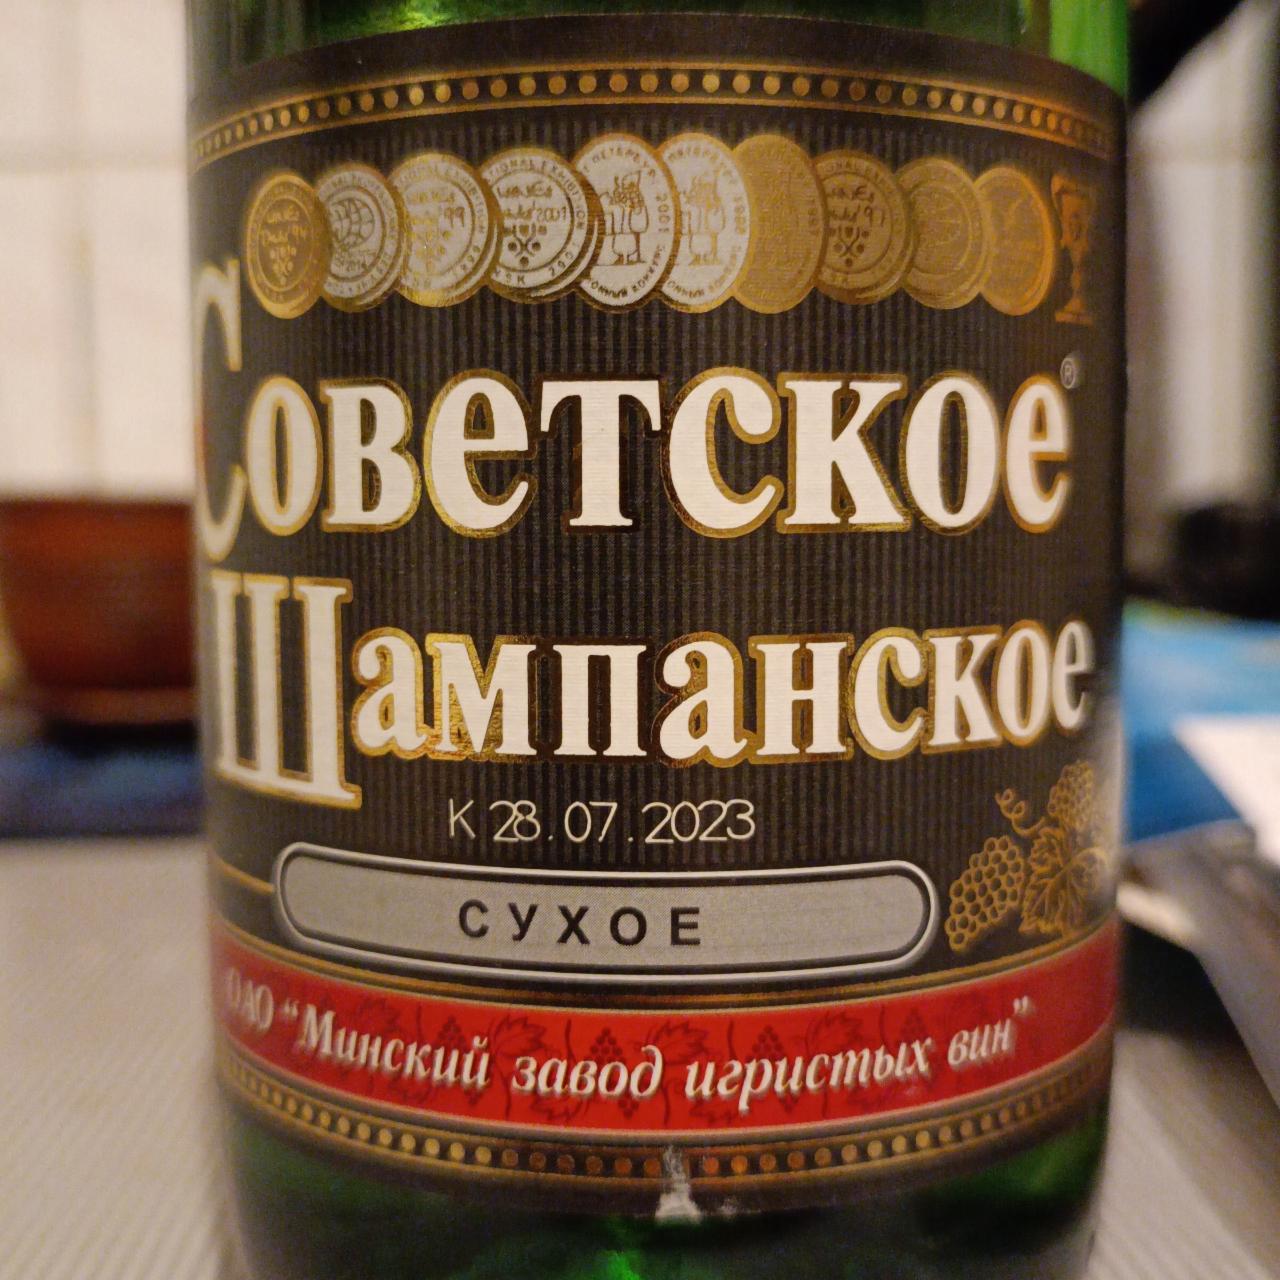 Фото - Шампанское сухое Советское Минский завод игристых вин